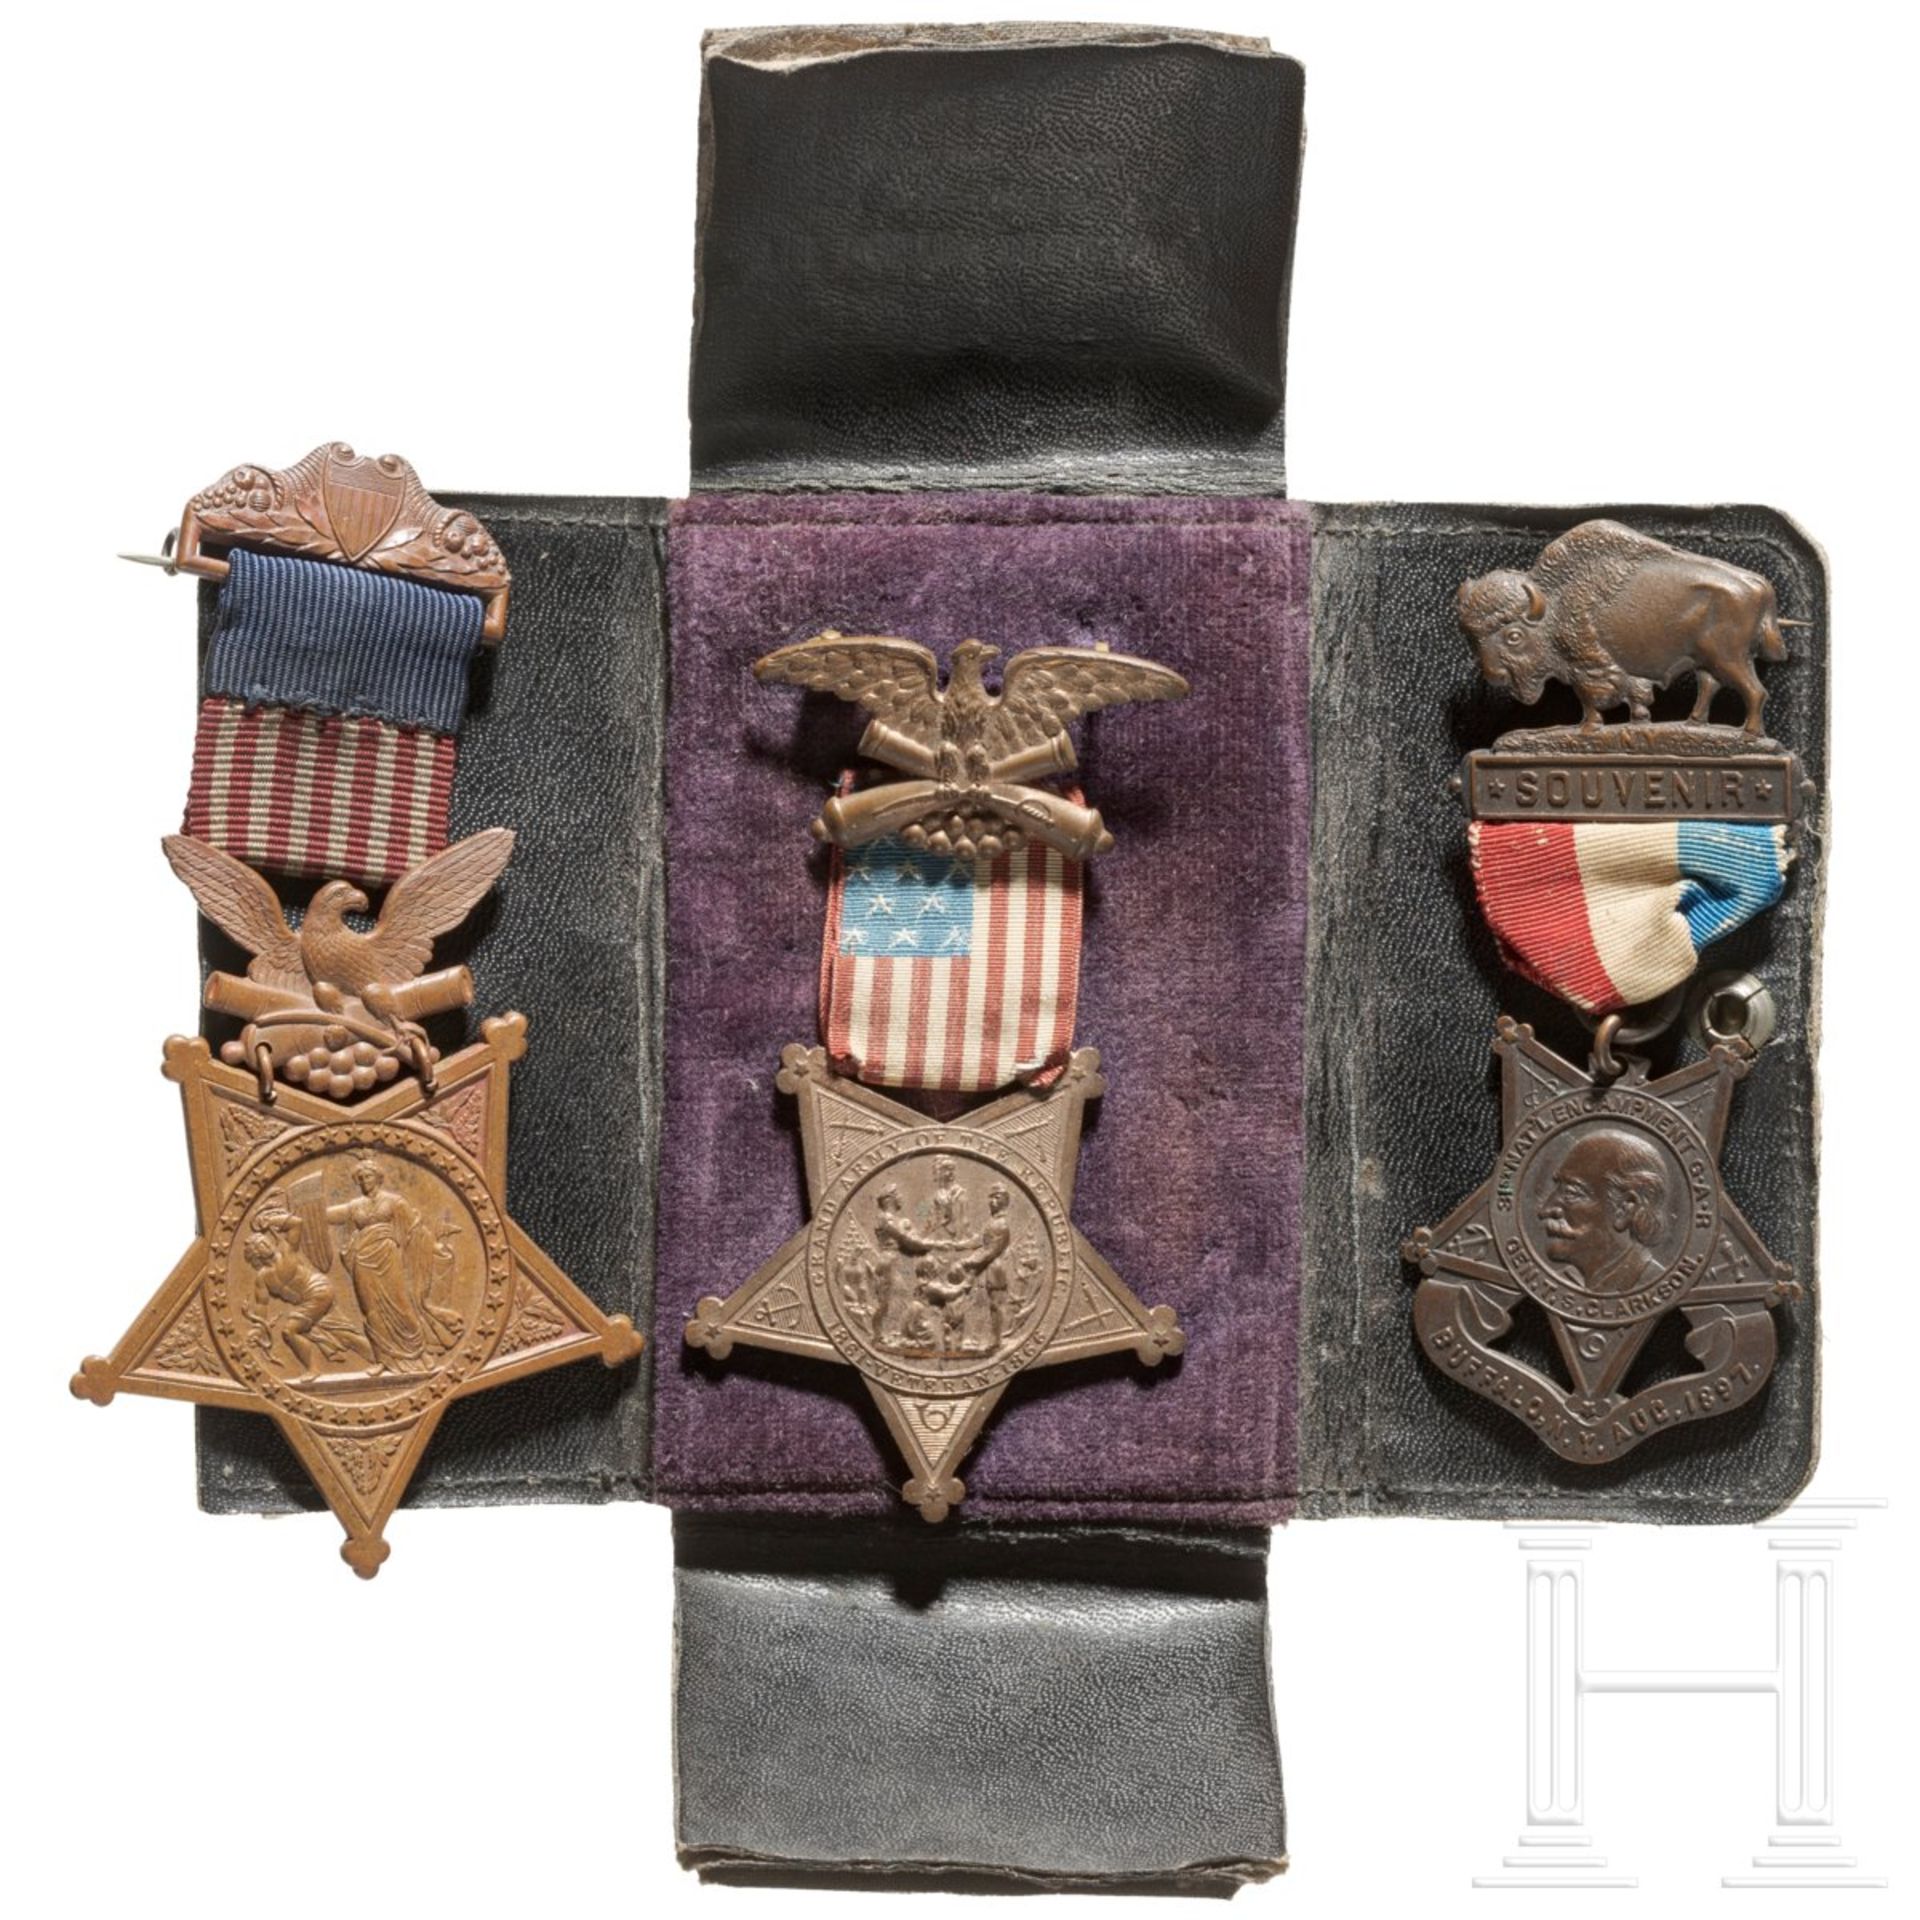 Sgt. John Karr – Congressional Medal of Honor als Mitglied der Ehrengarde für den verstorbenen Präsi - Bild 2 aus 11